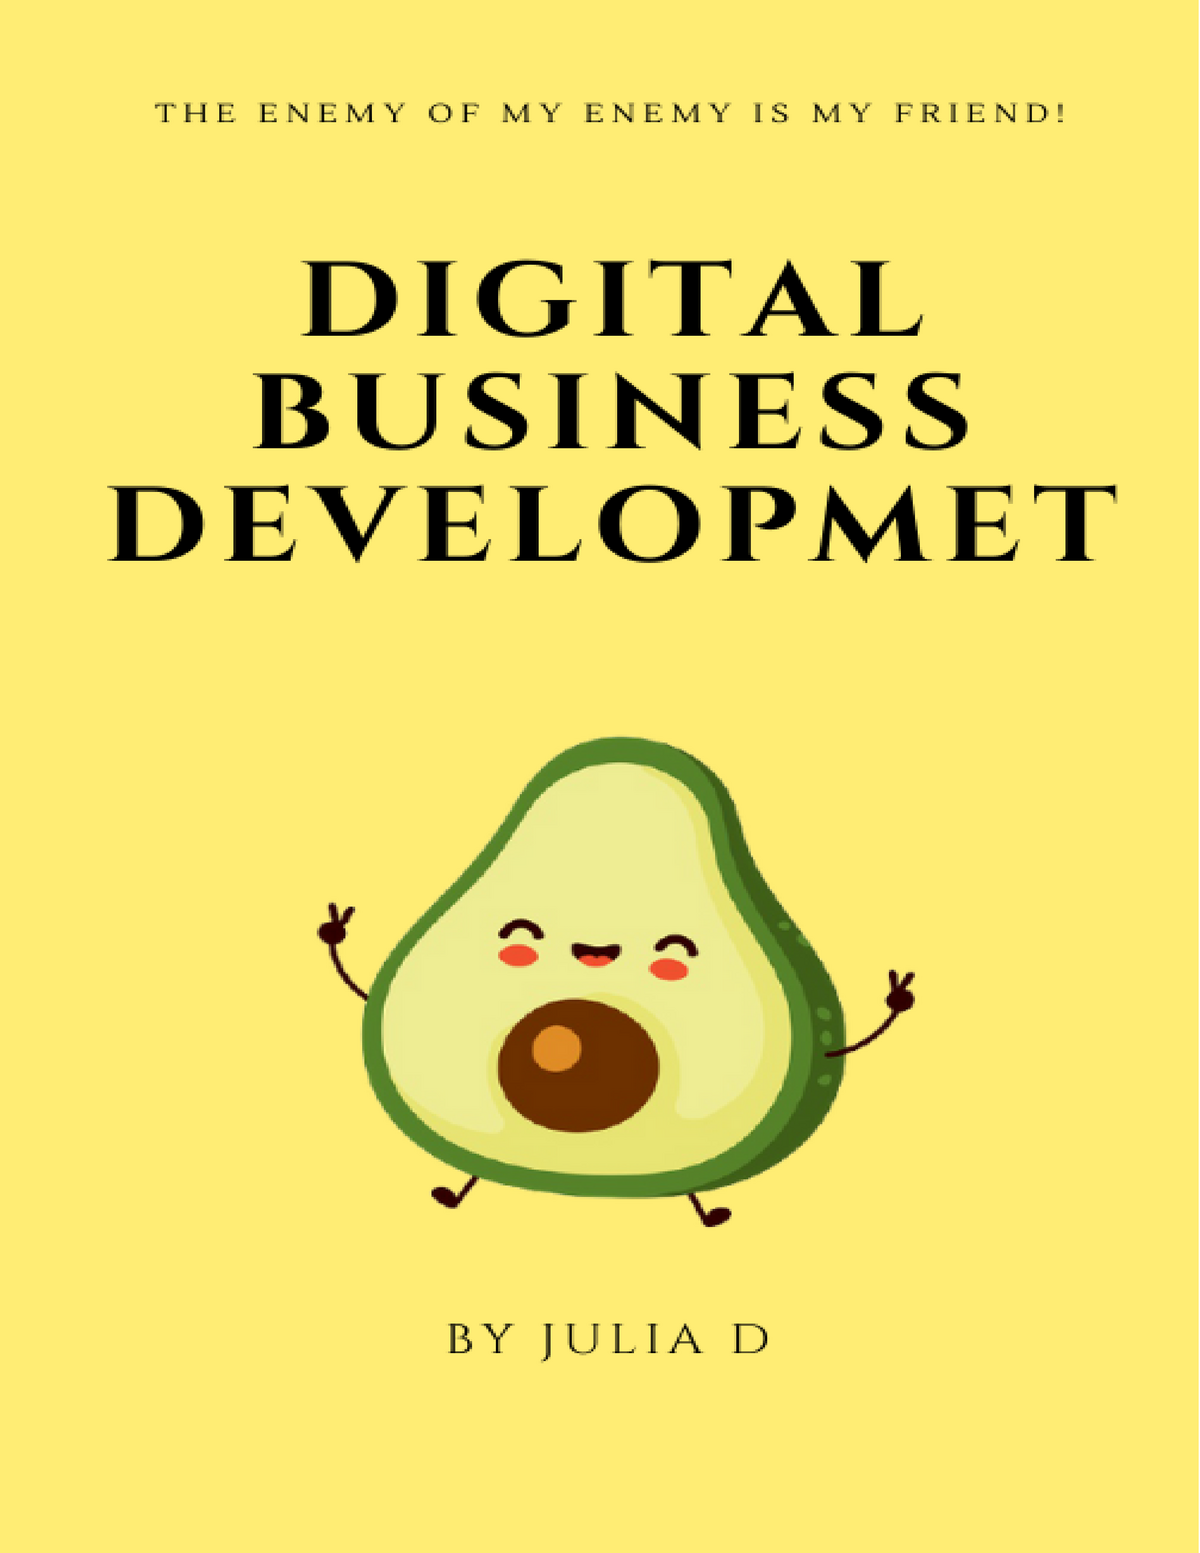 digital business development assignment 1